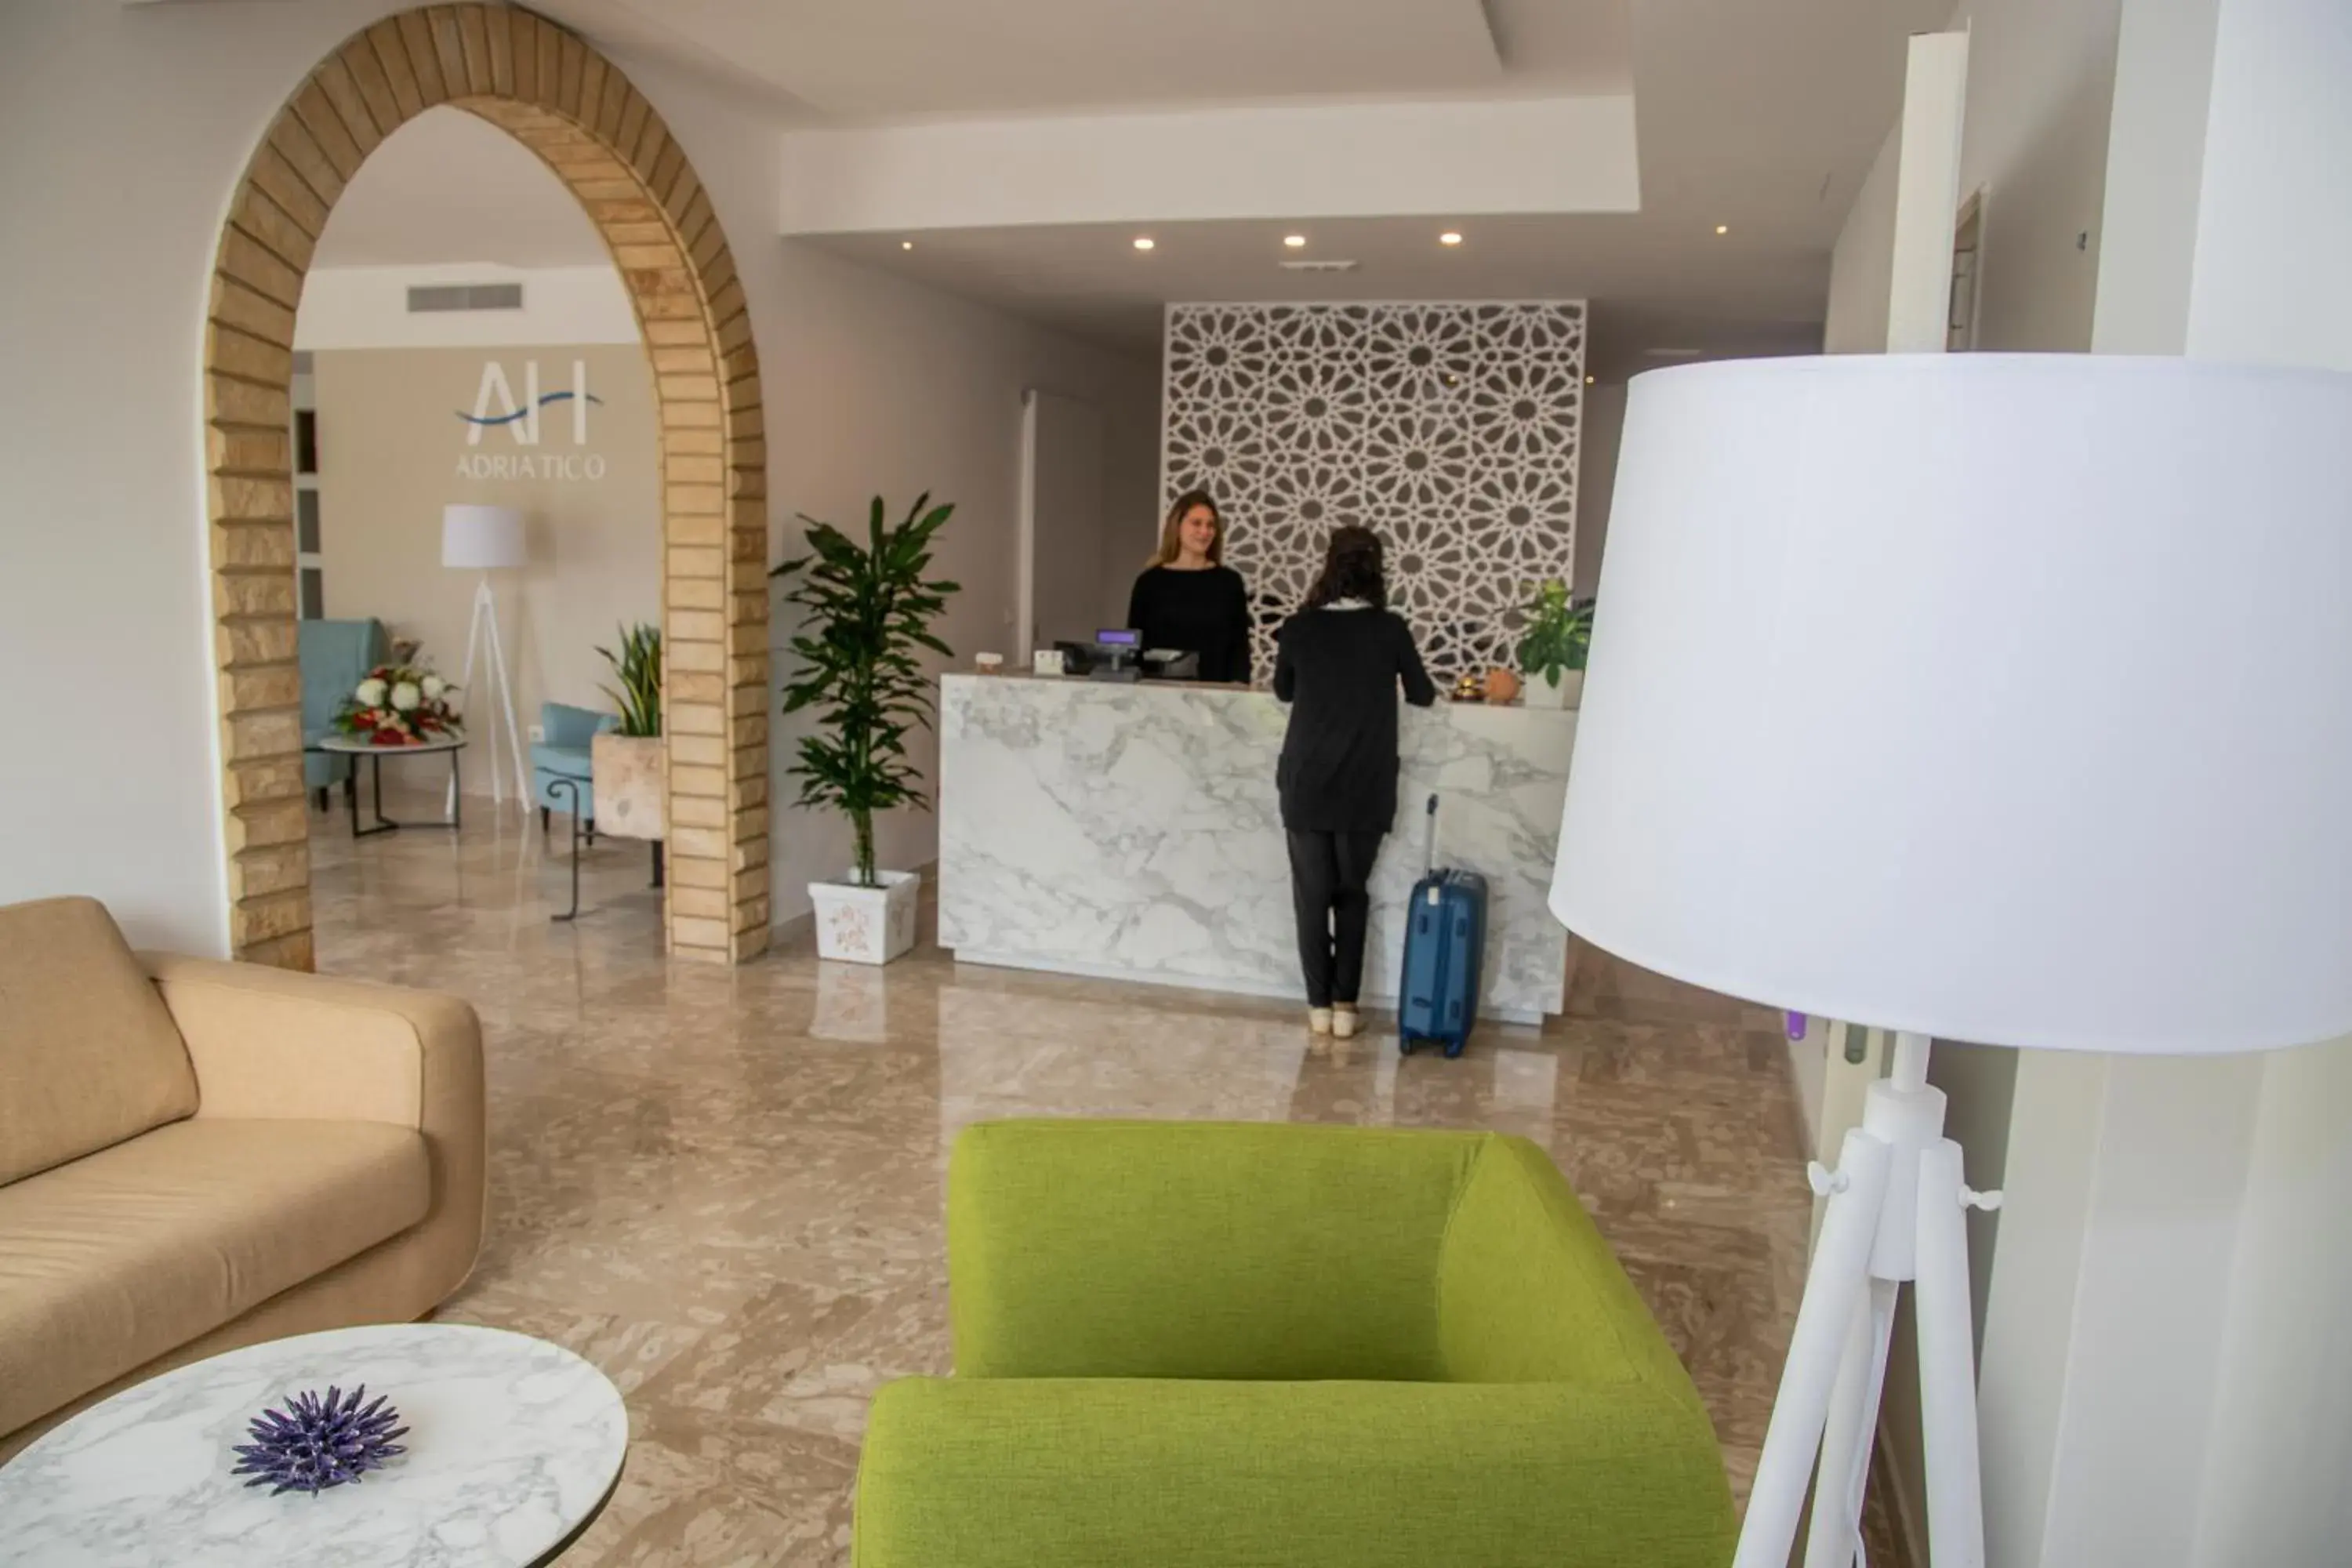 Lobby or reception, Lobby/Reception in Hotel Adriatico